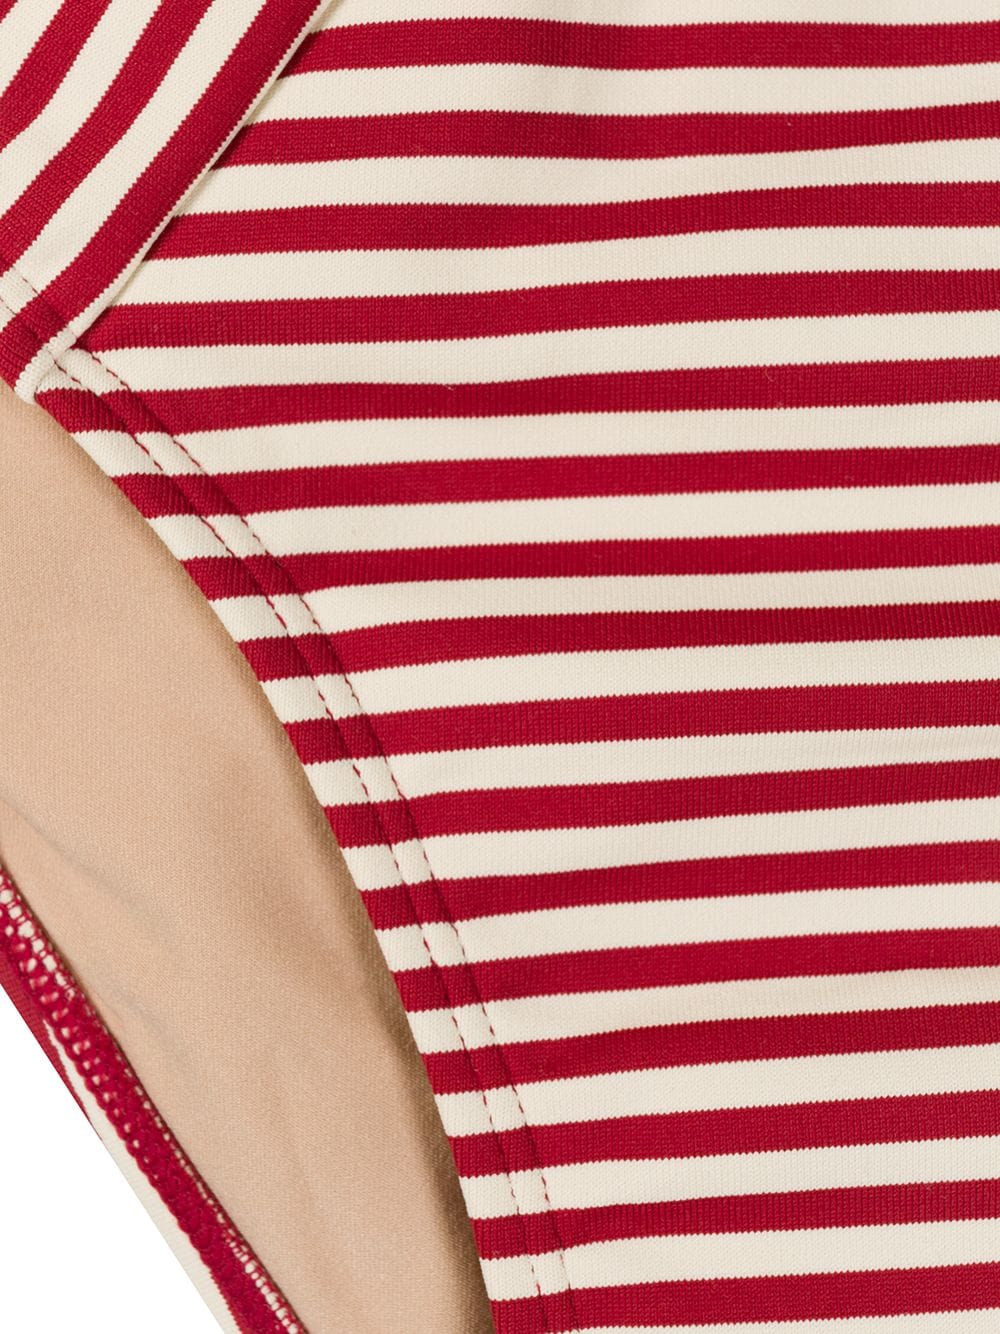 marlies dekkers striped tie-fastening briefs - red